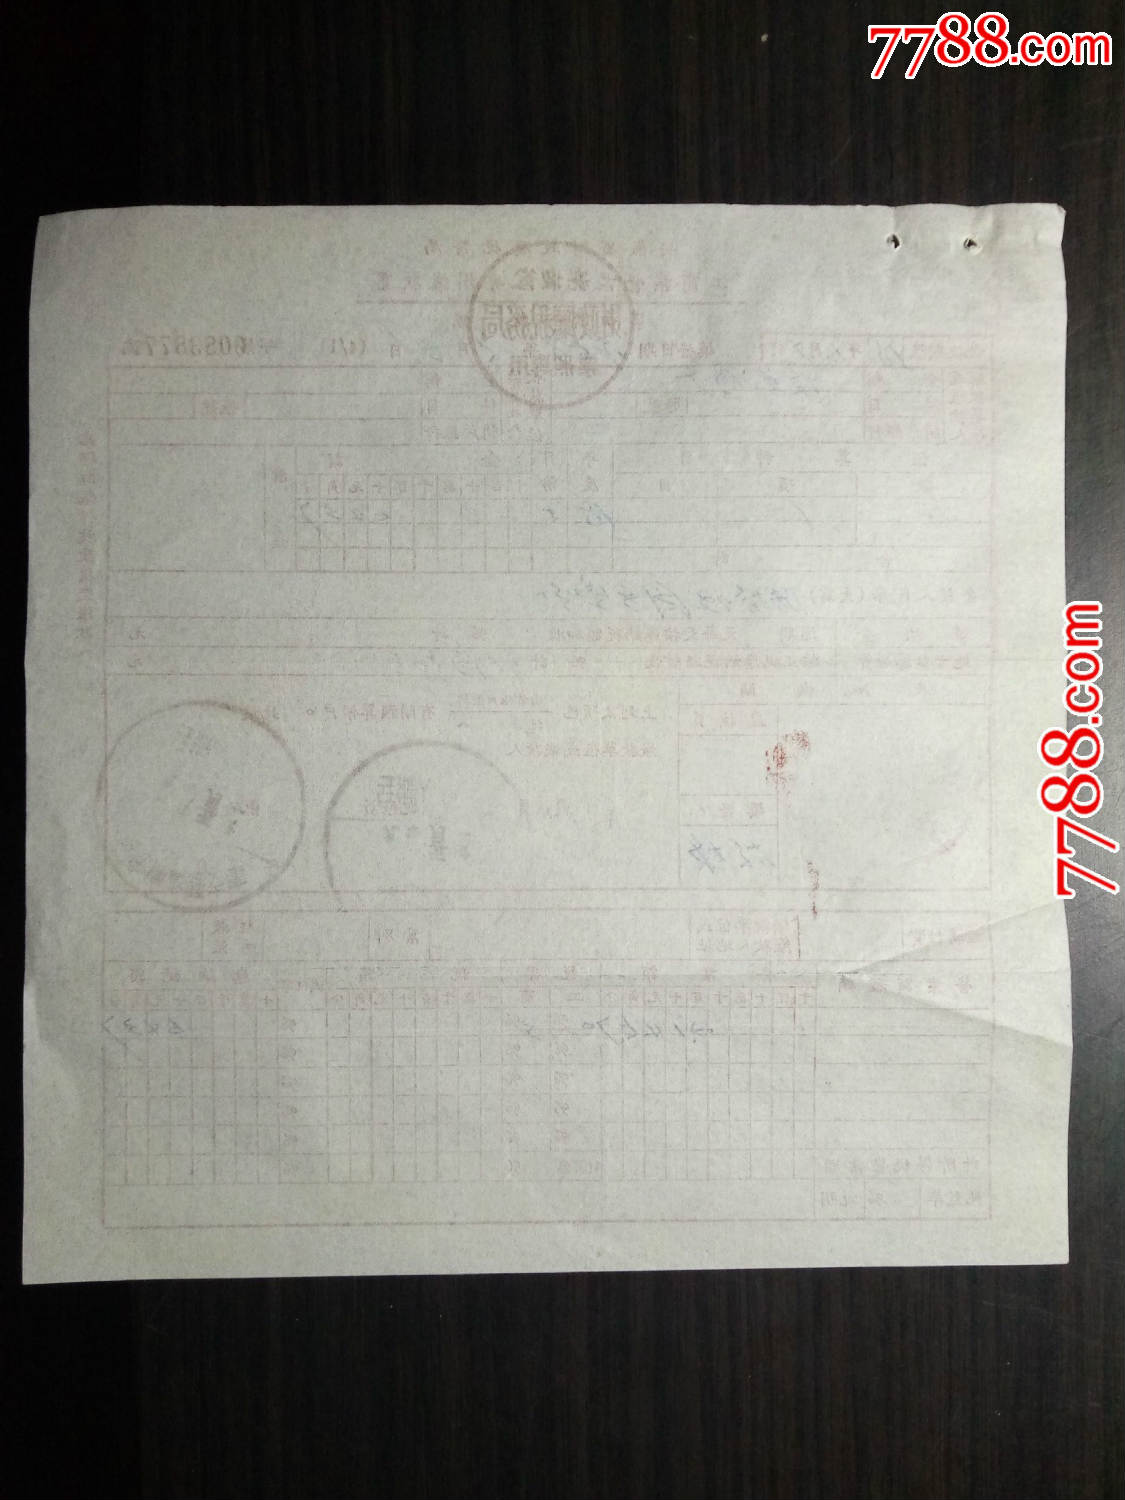 老票据:1958年安徽省财政厅税务局工商业营业